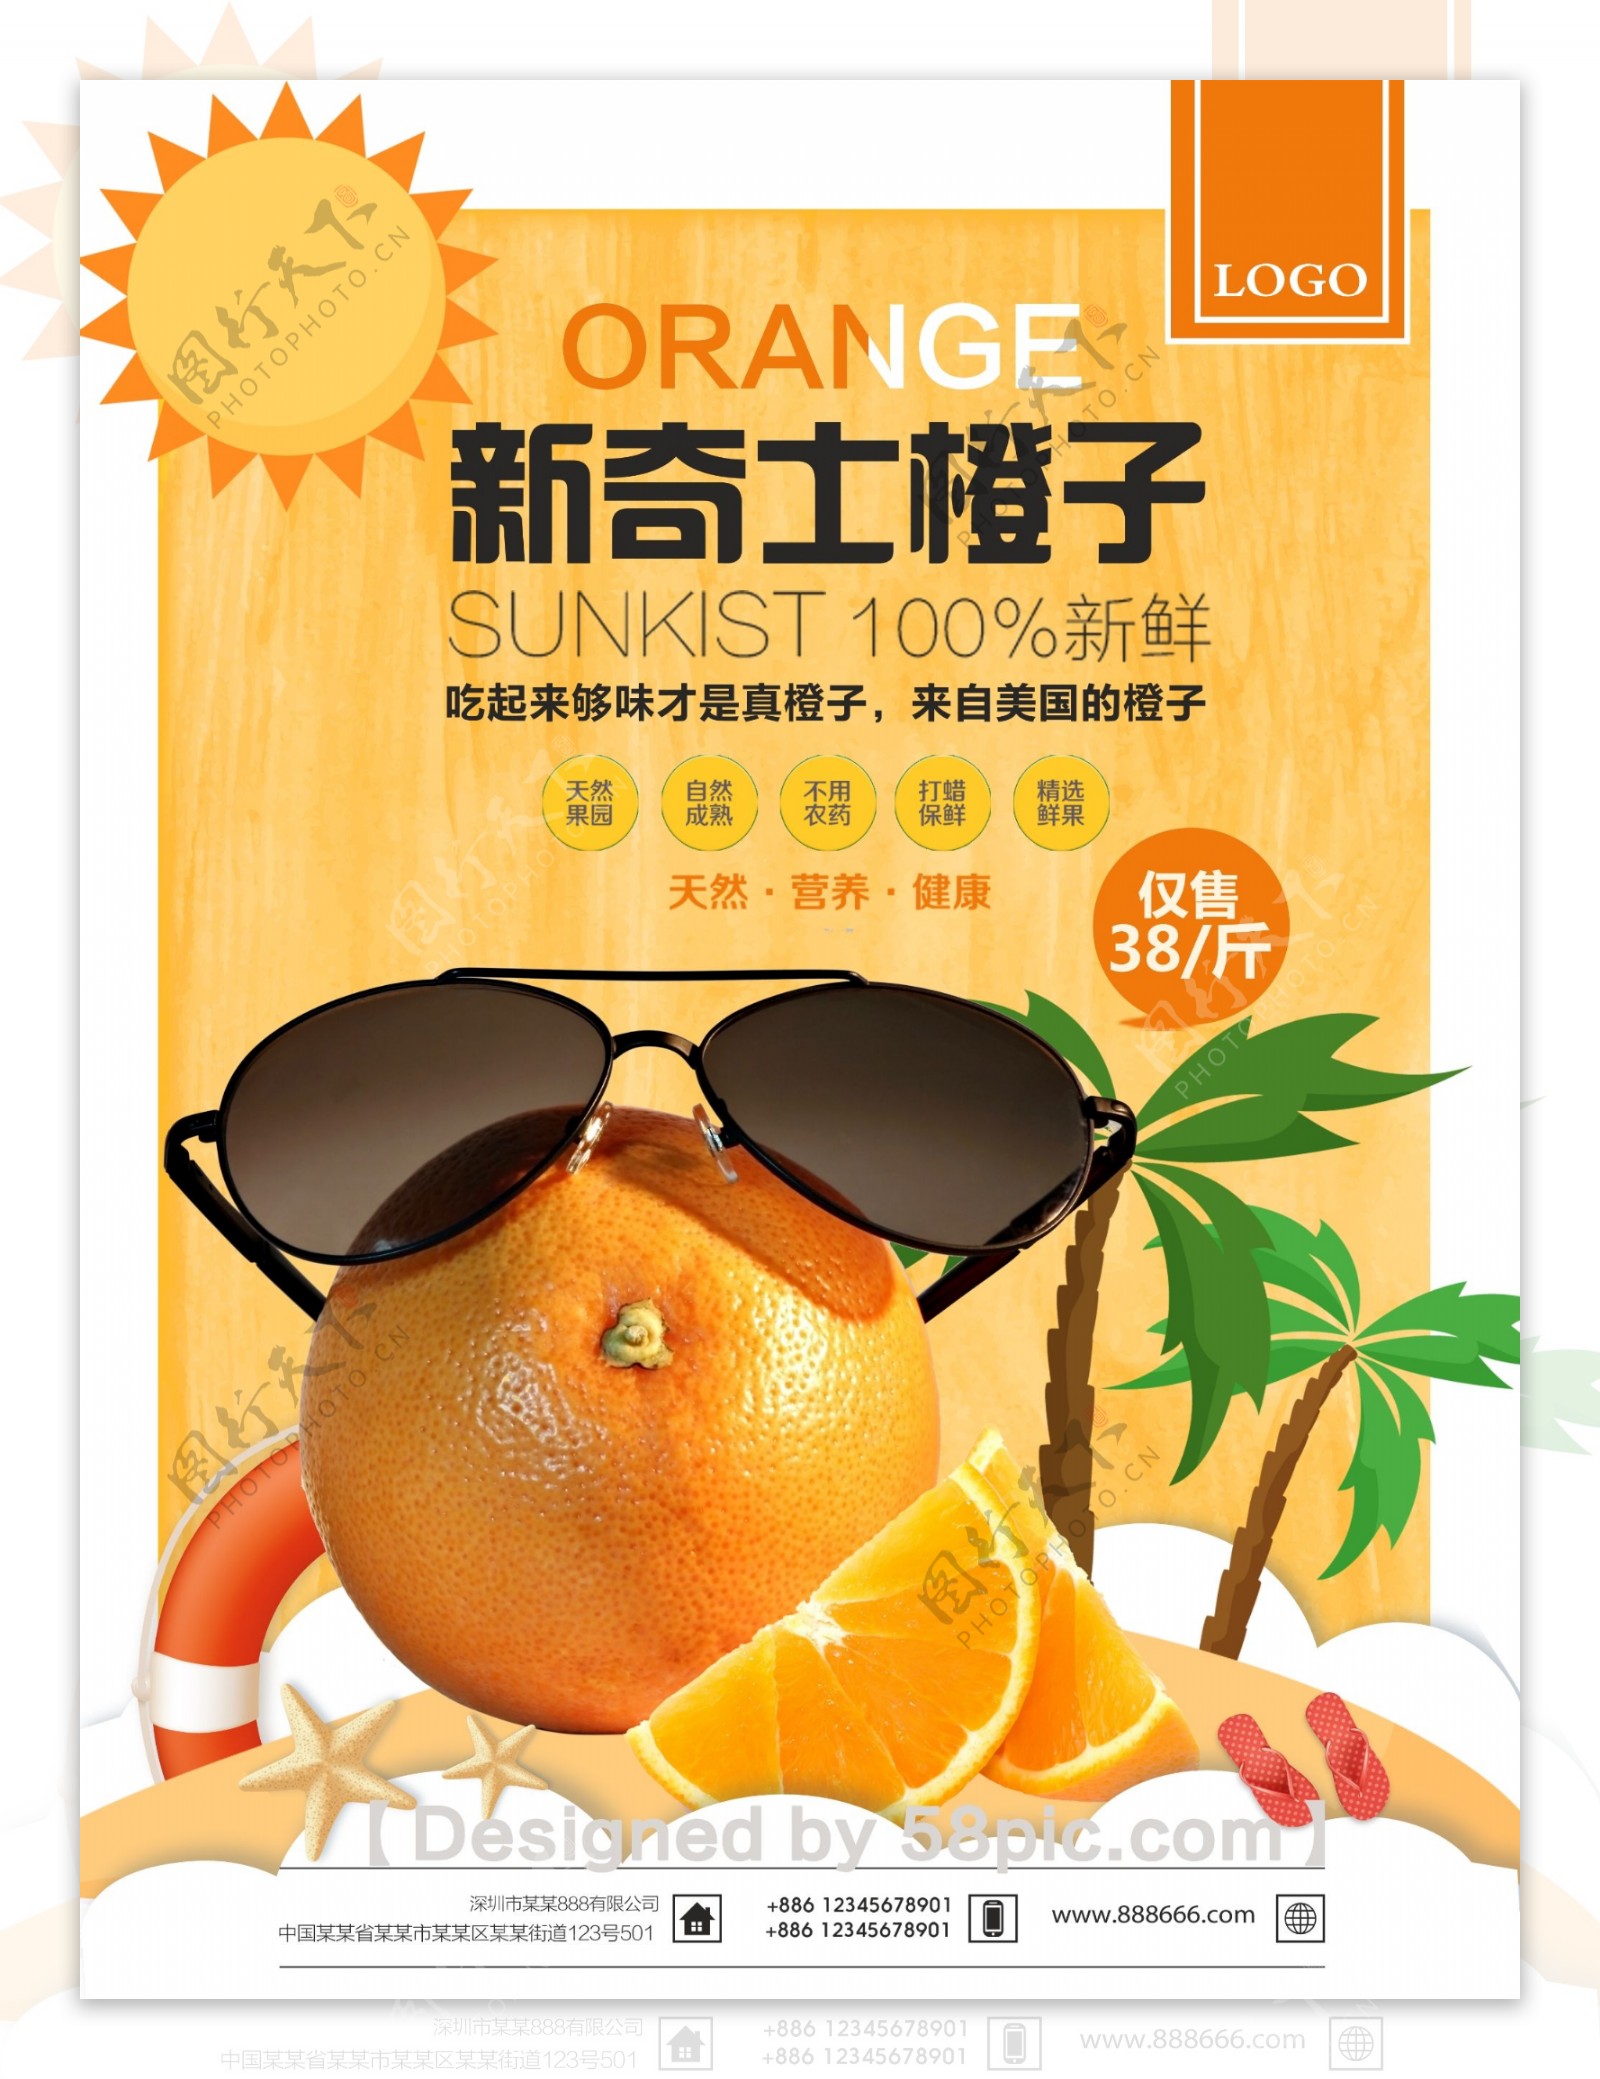 夏日阳光鲜橙水果海报